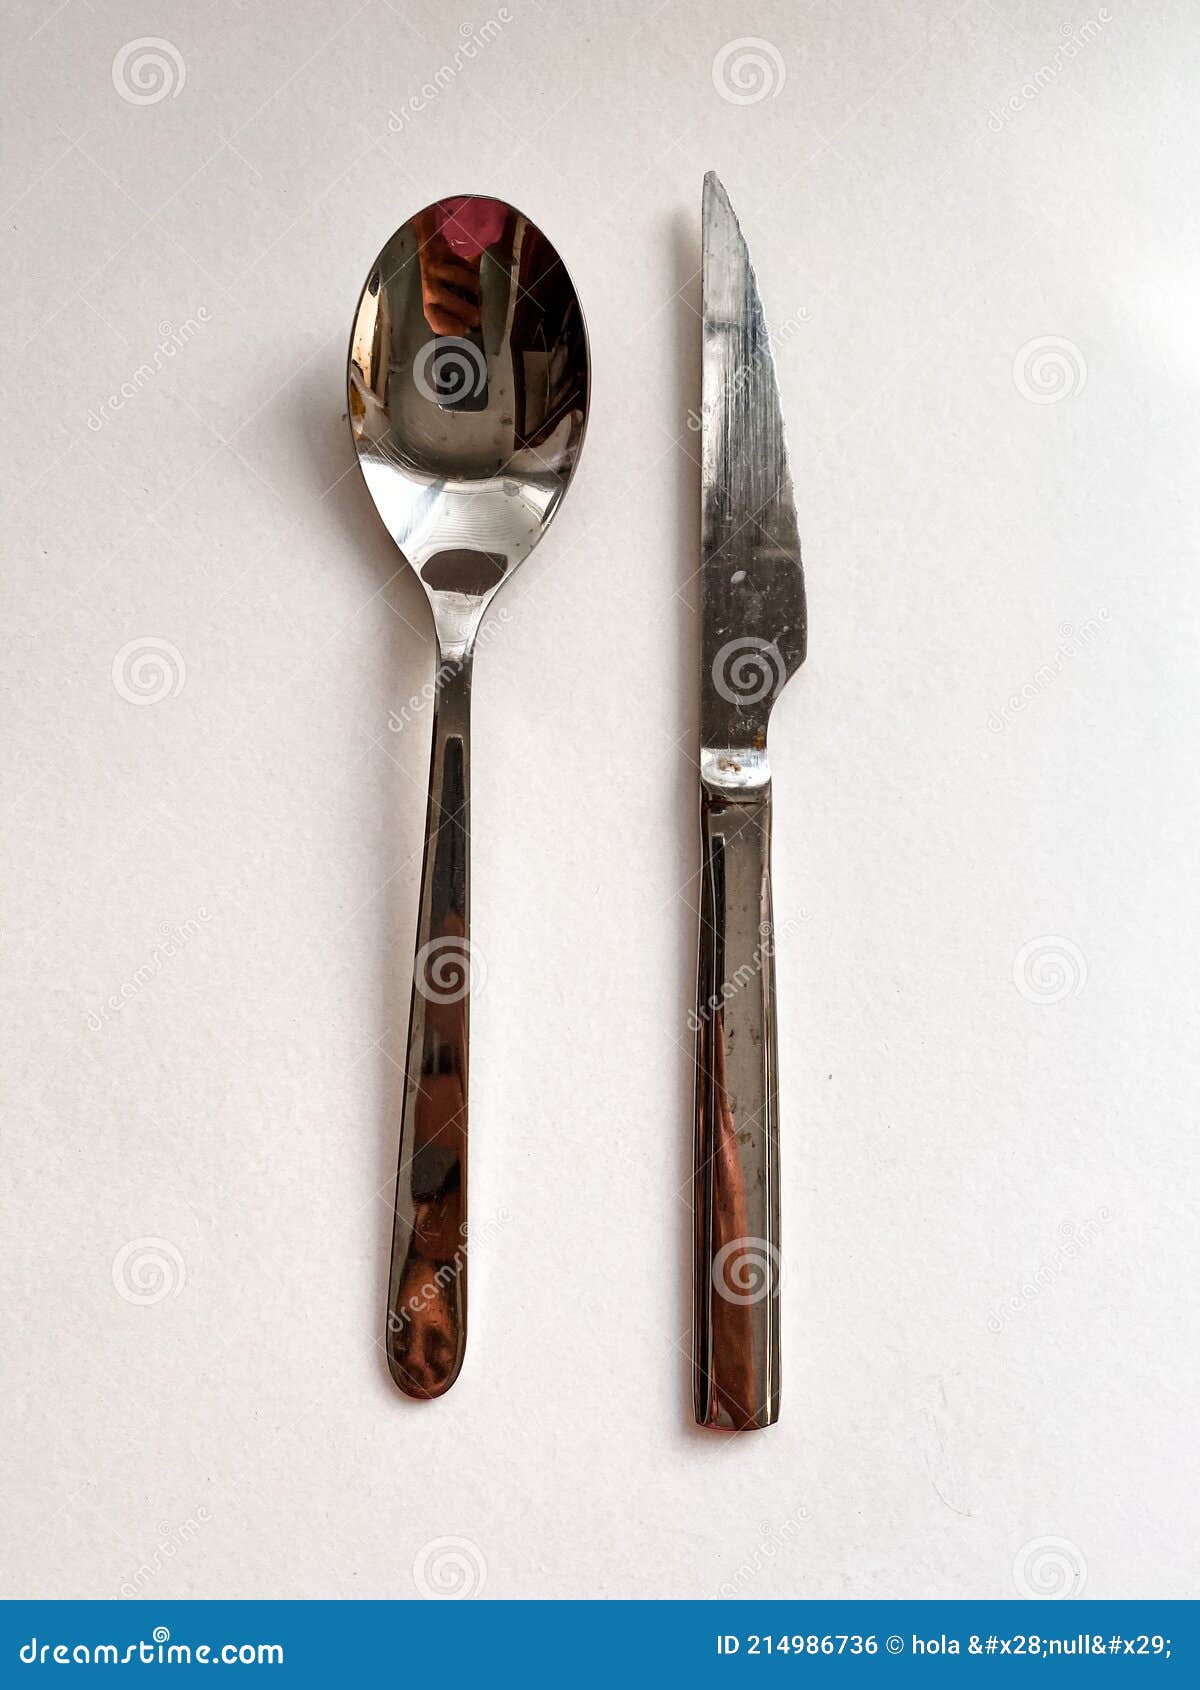 cutlery spoon  knife cubiertos tenedor cuchillo